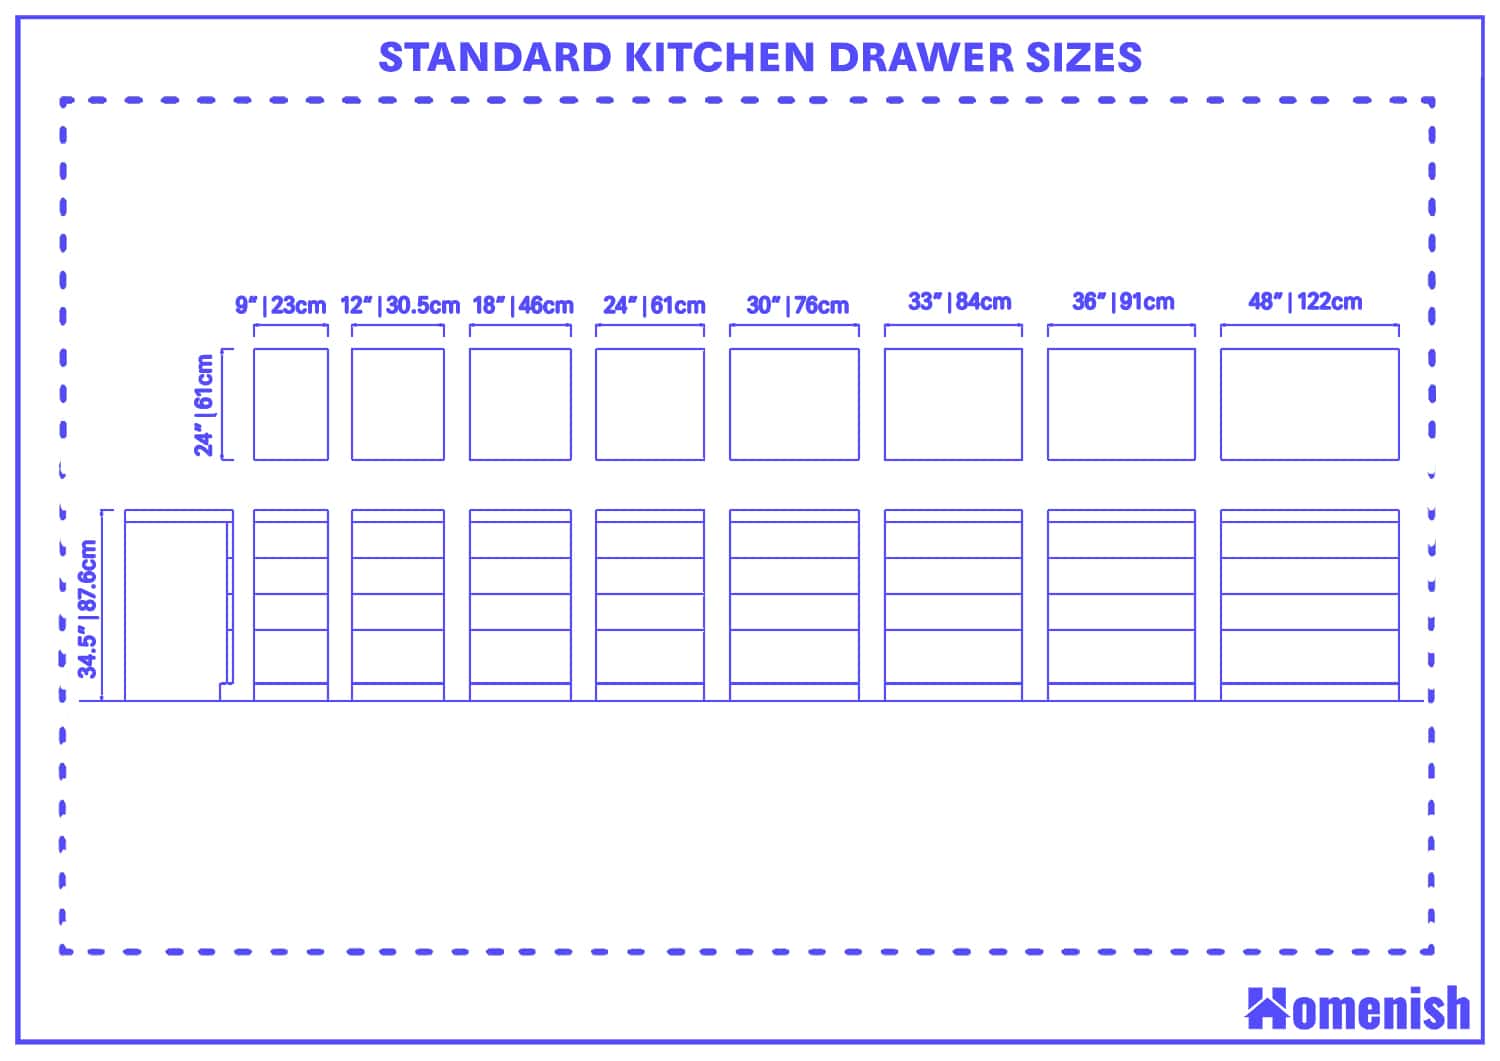 Standard Kitchen Drawer Sizes